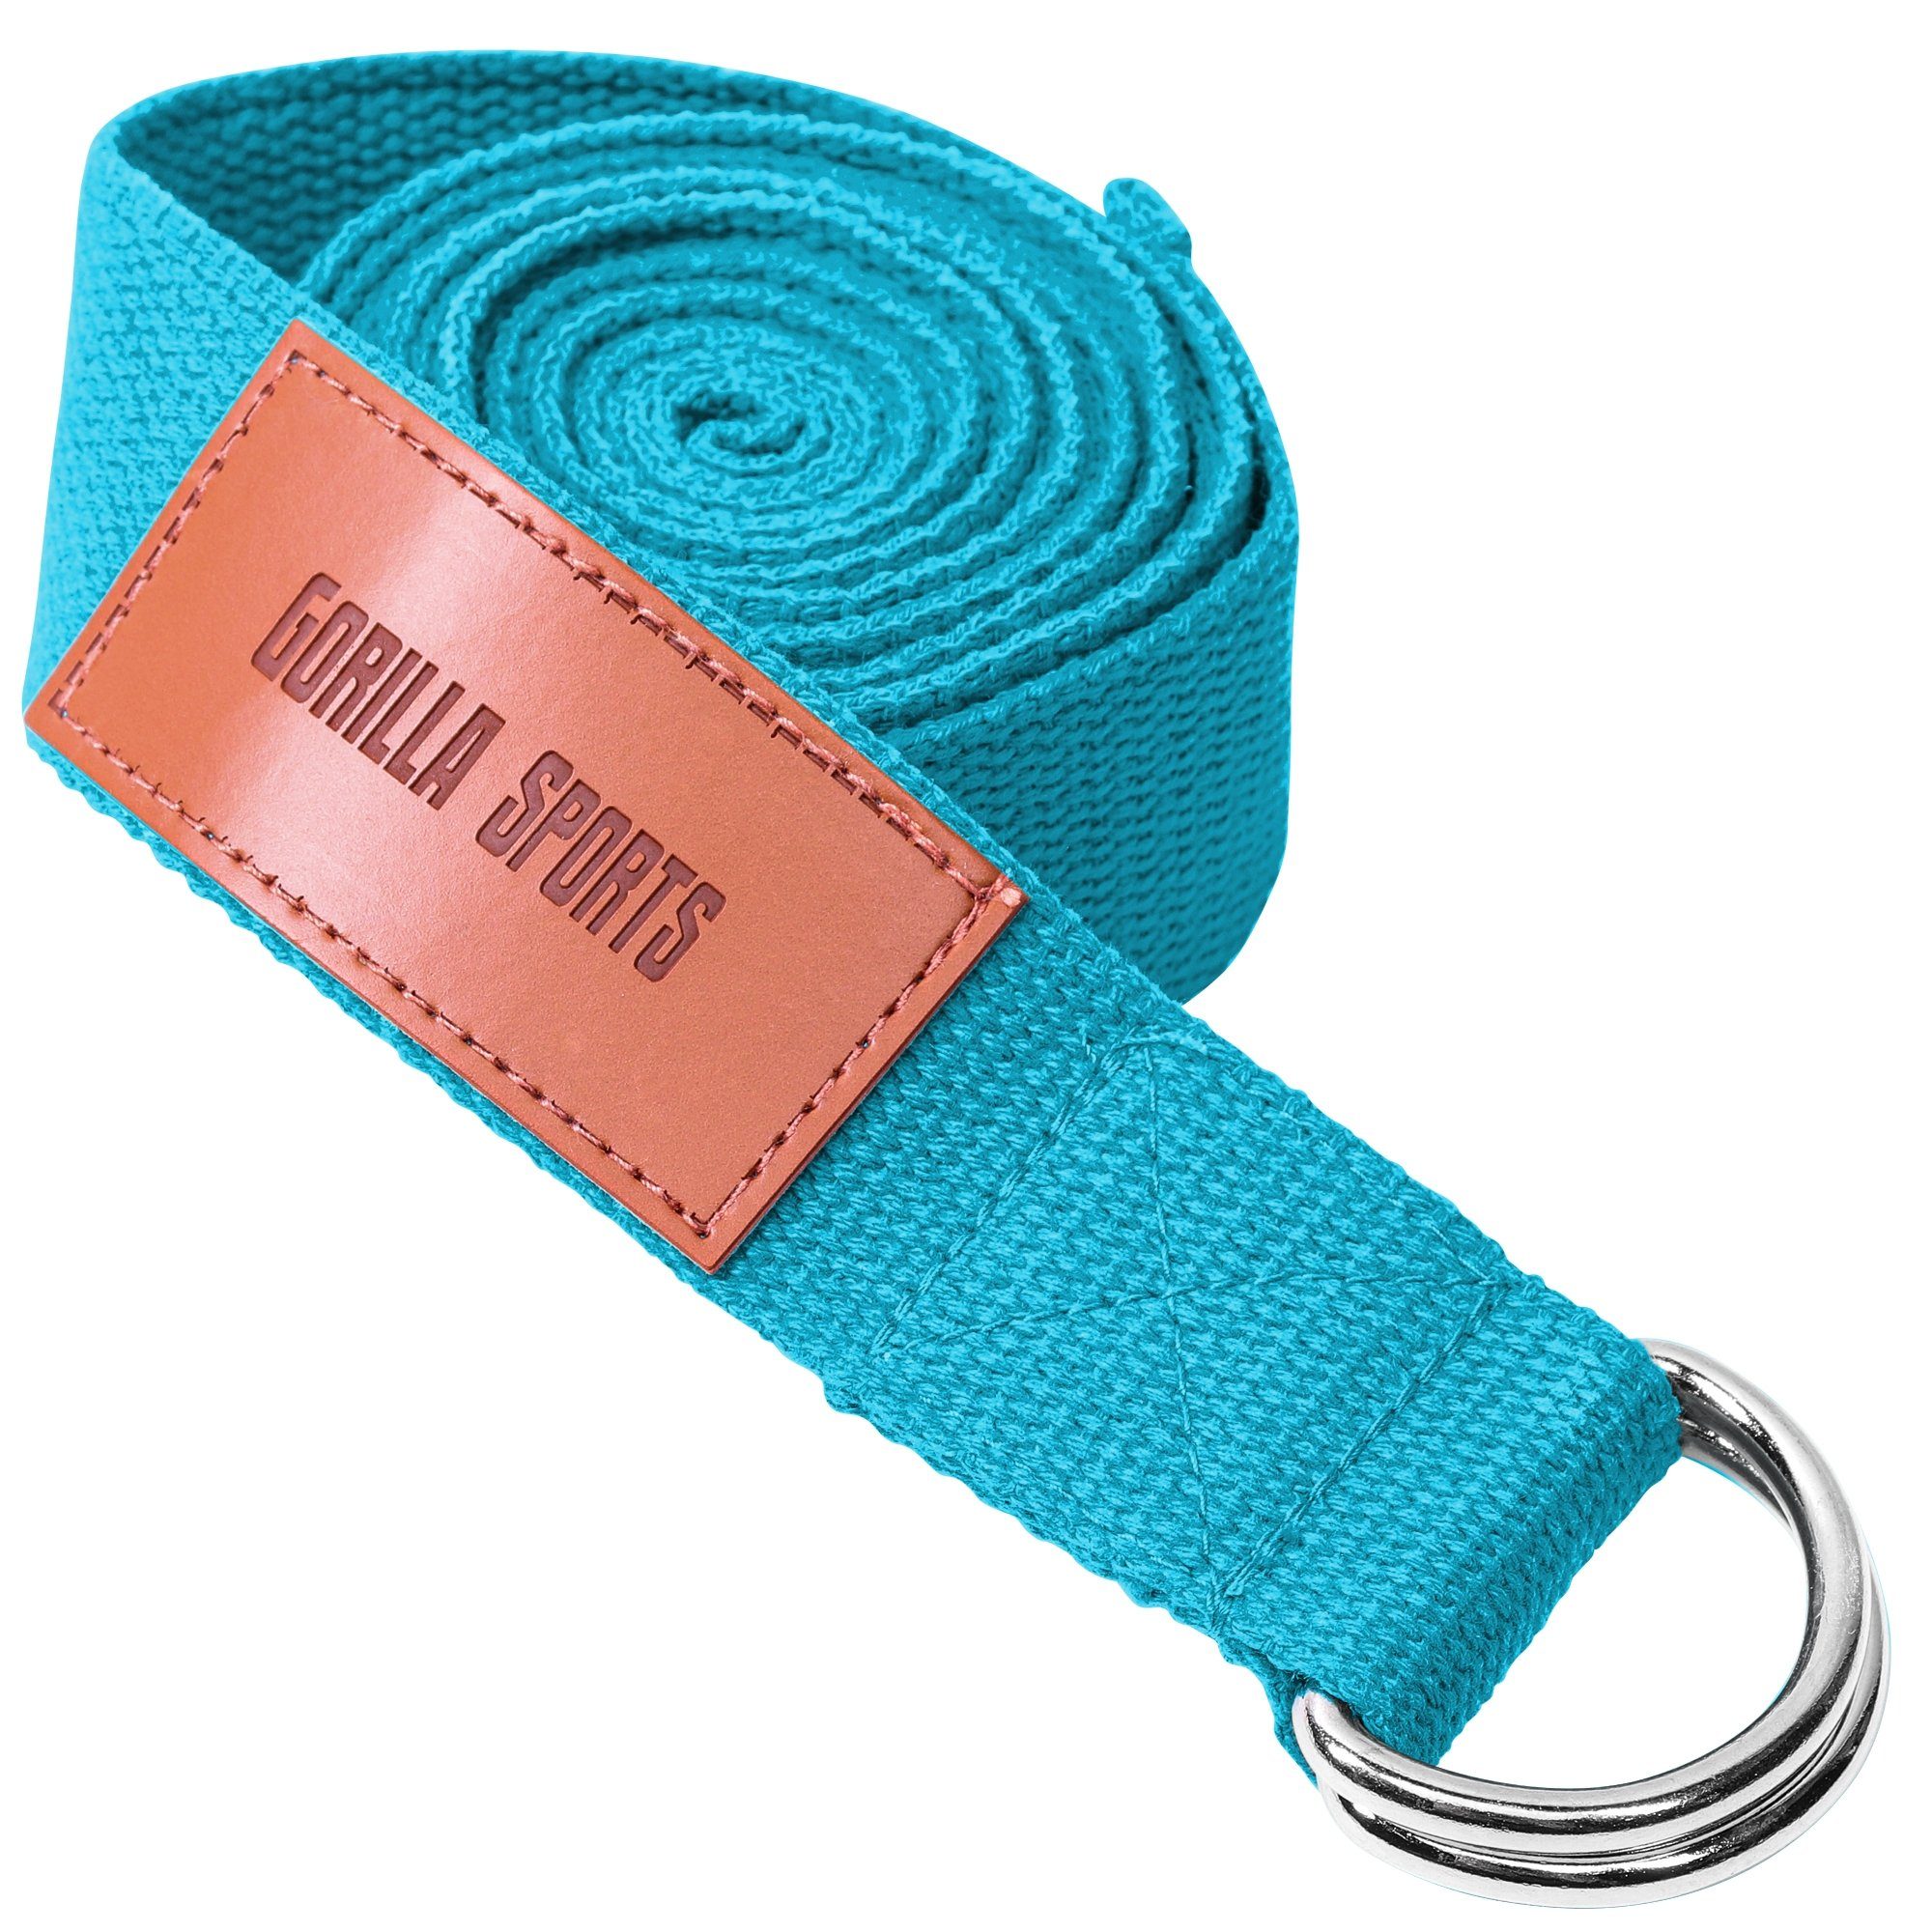 Metall, Baumwolle, Yoga SPORTS aus Strap GORILLA Verschluss Yoga-Gürtel, Blau mit Yogagurt 100%